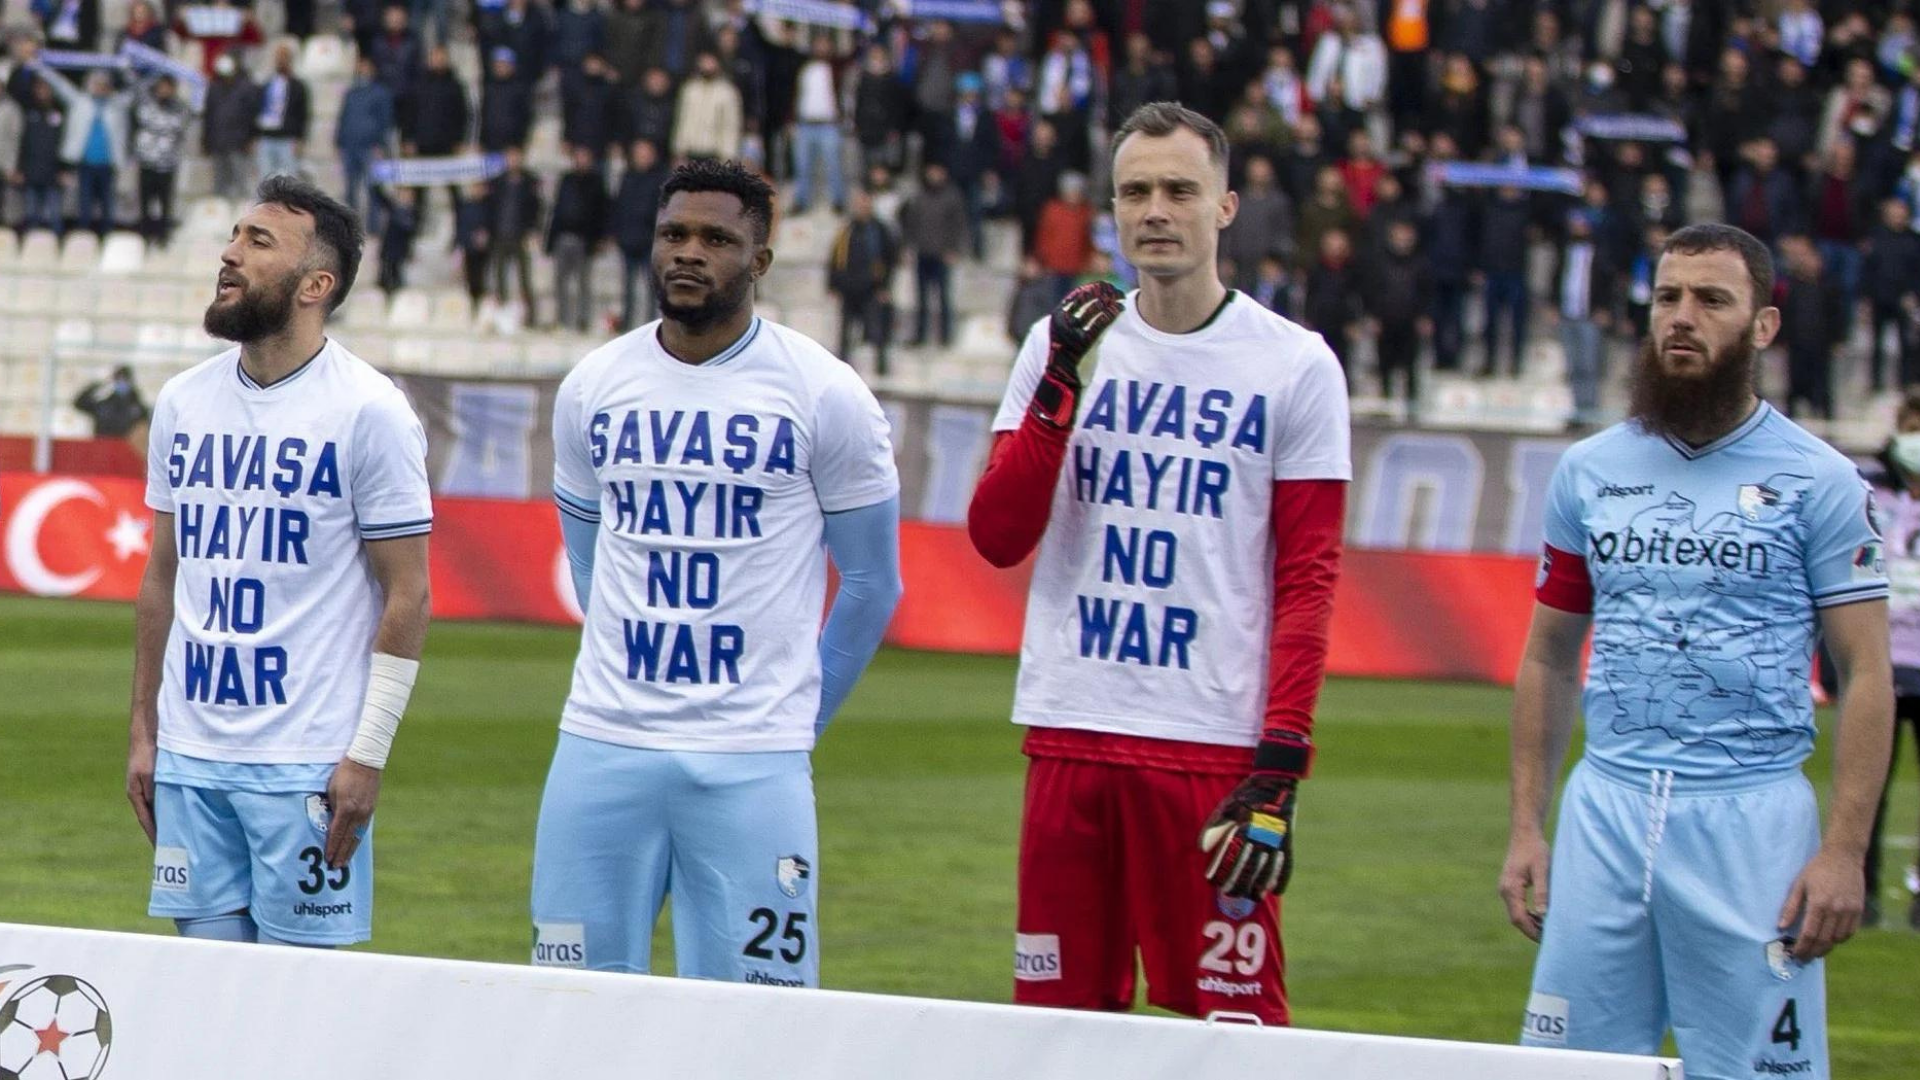 Jogador se recusa a vestir camisa contra guerra na Ucrânia. Na foto, jogadores estão um ao lado do outro vestindo uma camisa contrária à guerra na Ucrânia, excete Aykut Demir, que veste a camisa do time.